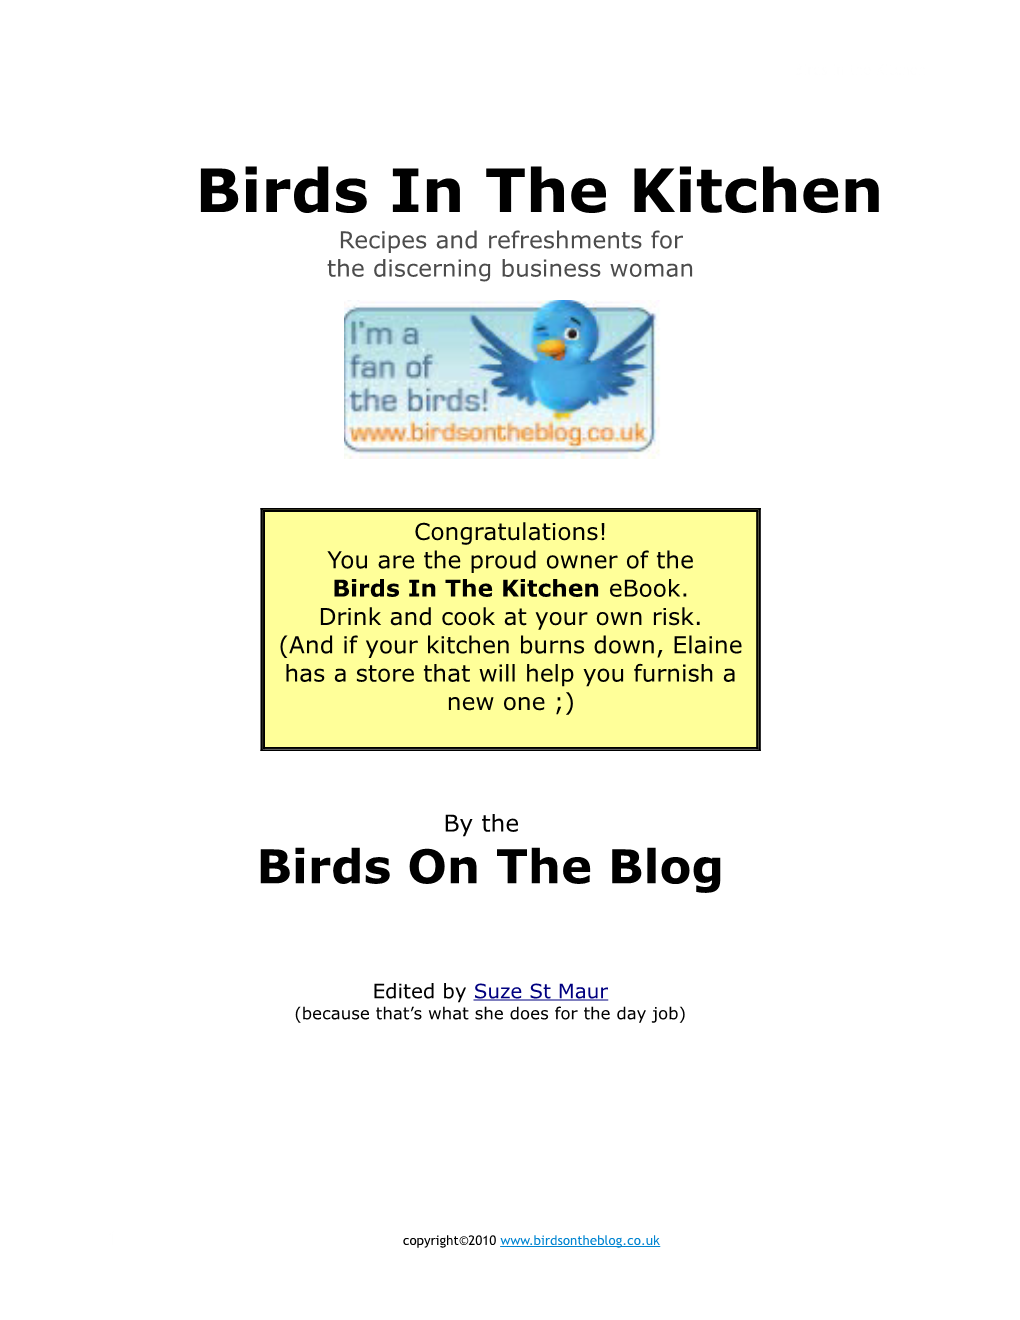 Birds in the Kitchen